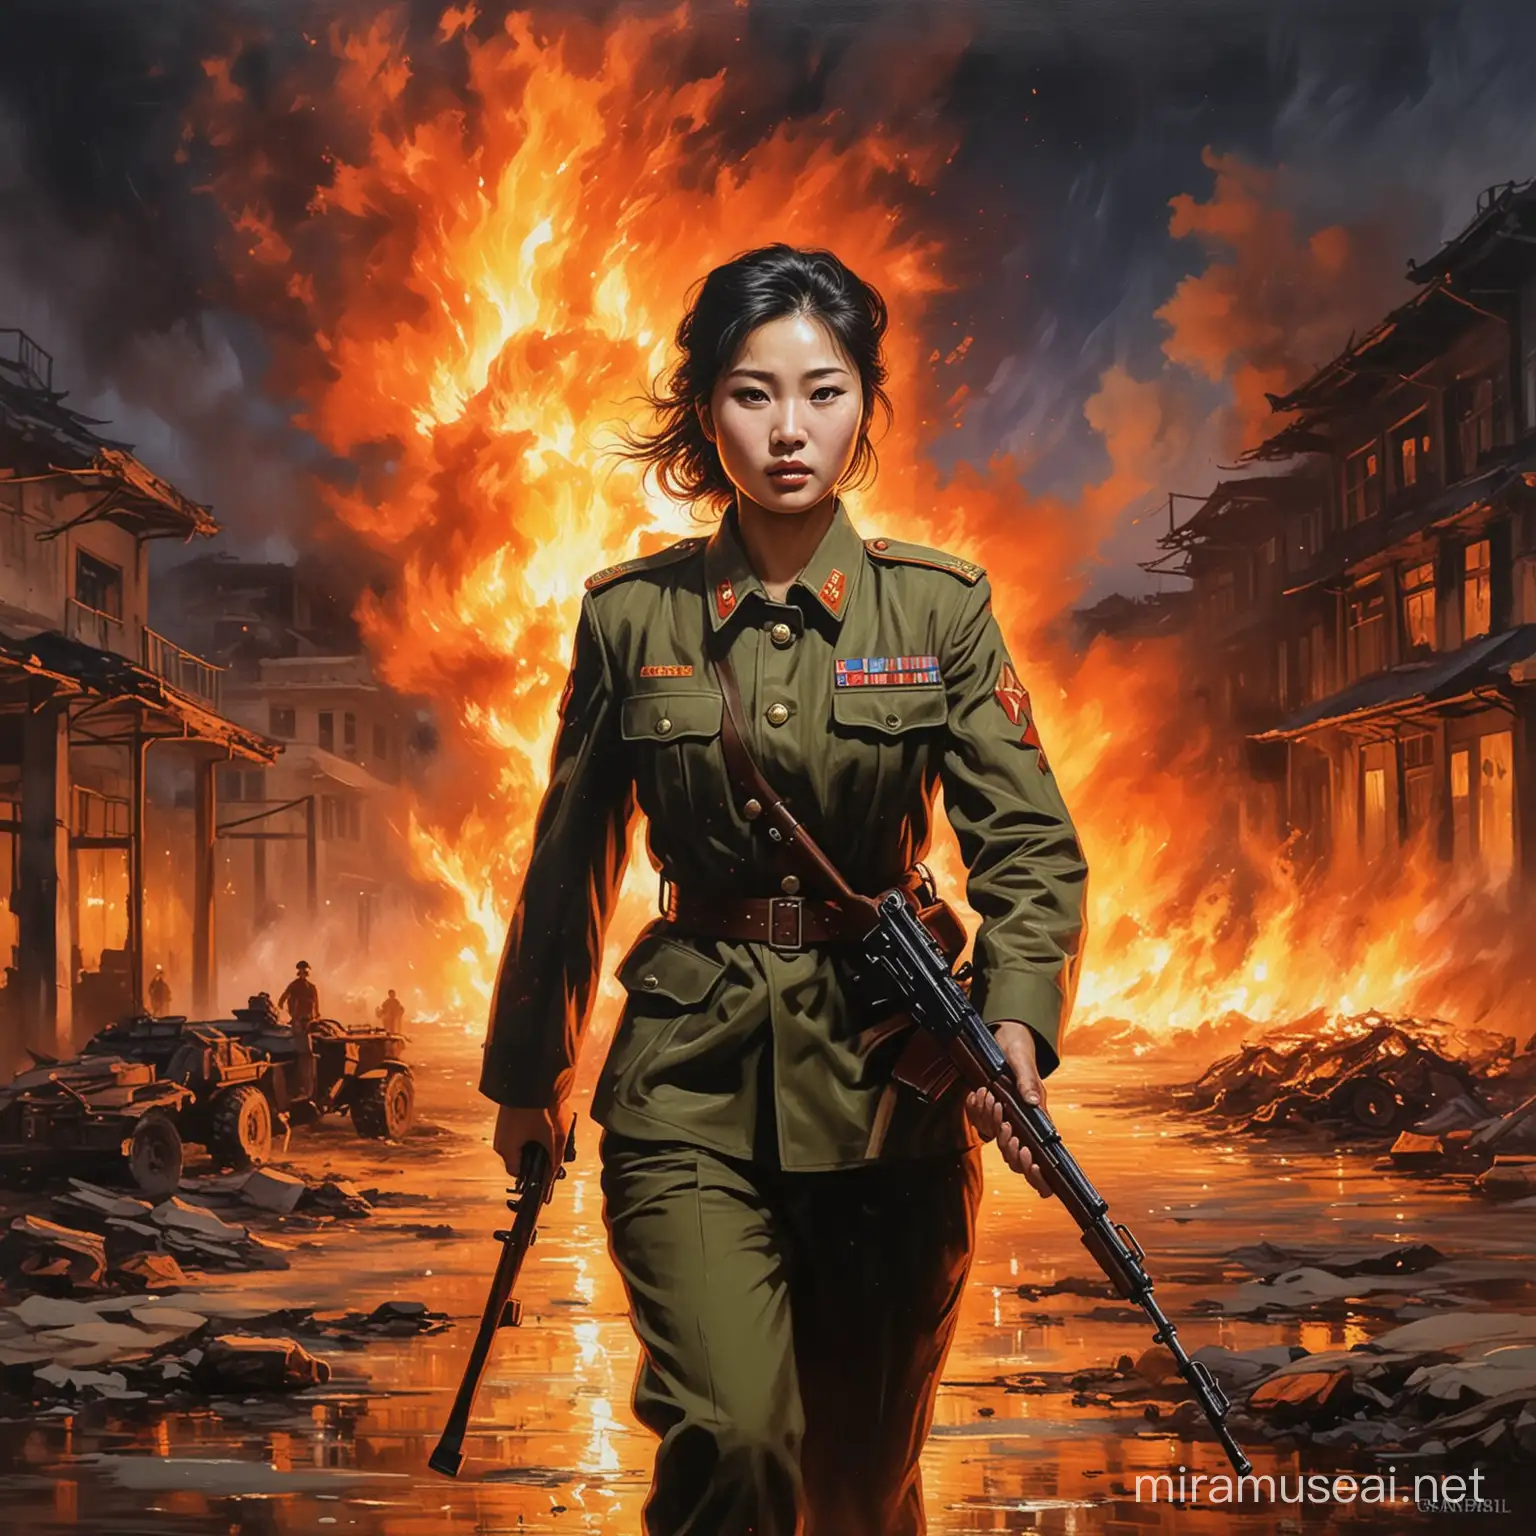 Peinture impressionniste femme soldat nord coréenne, une ville en flamme la nuit